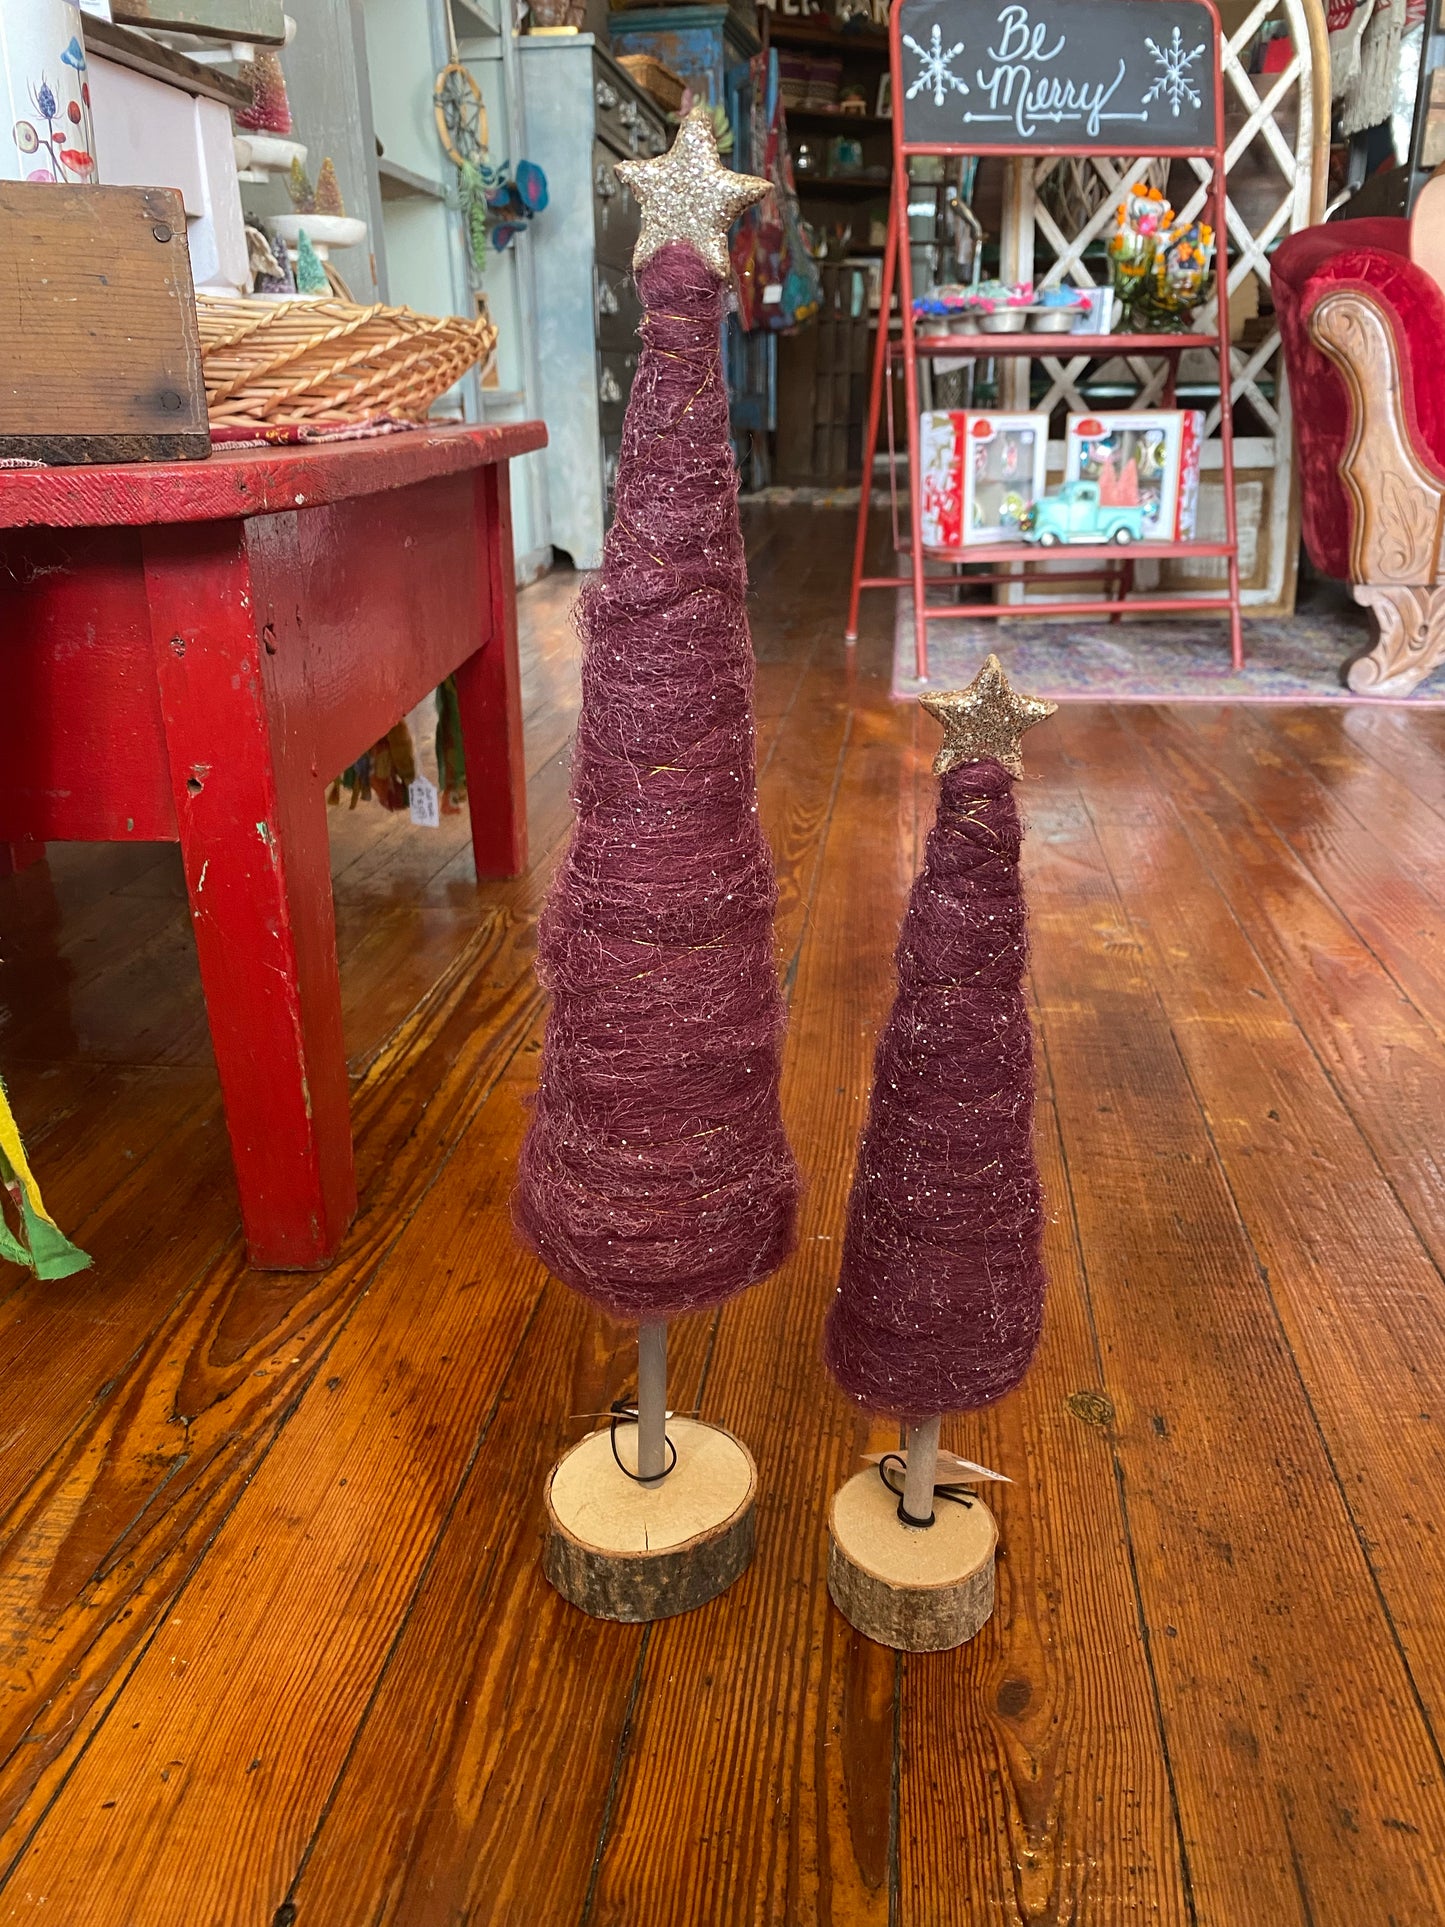 Wool spun sparkly tree